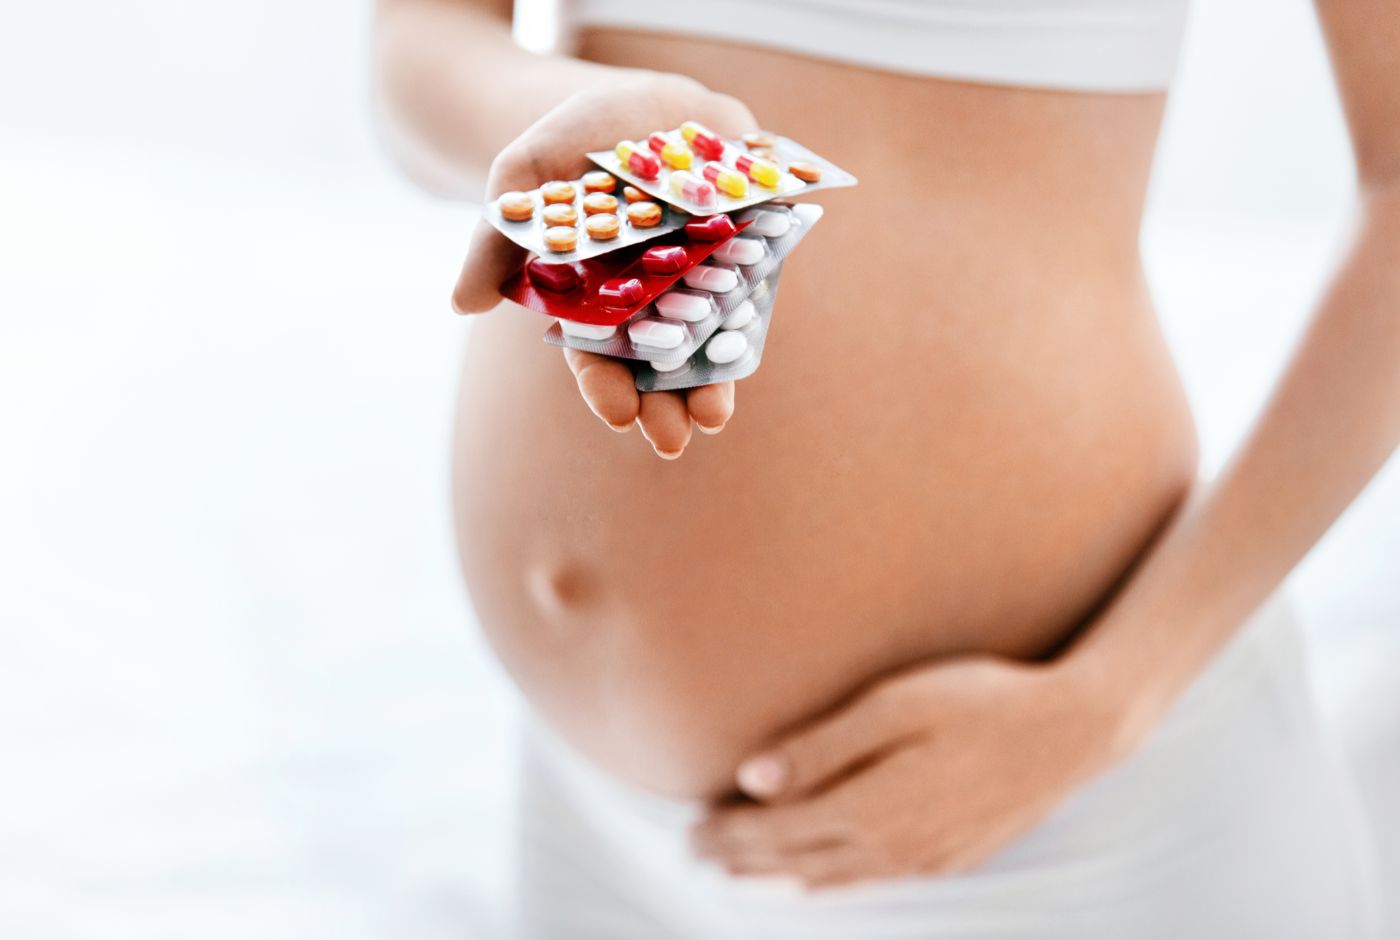 Exposures During Pregnancy or Breastfeeding